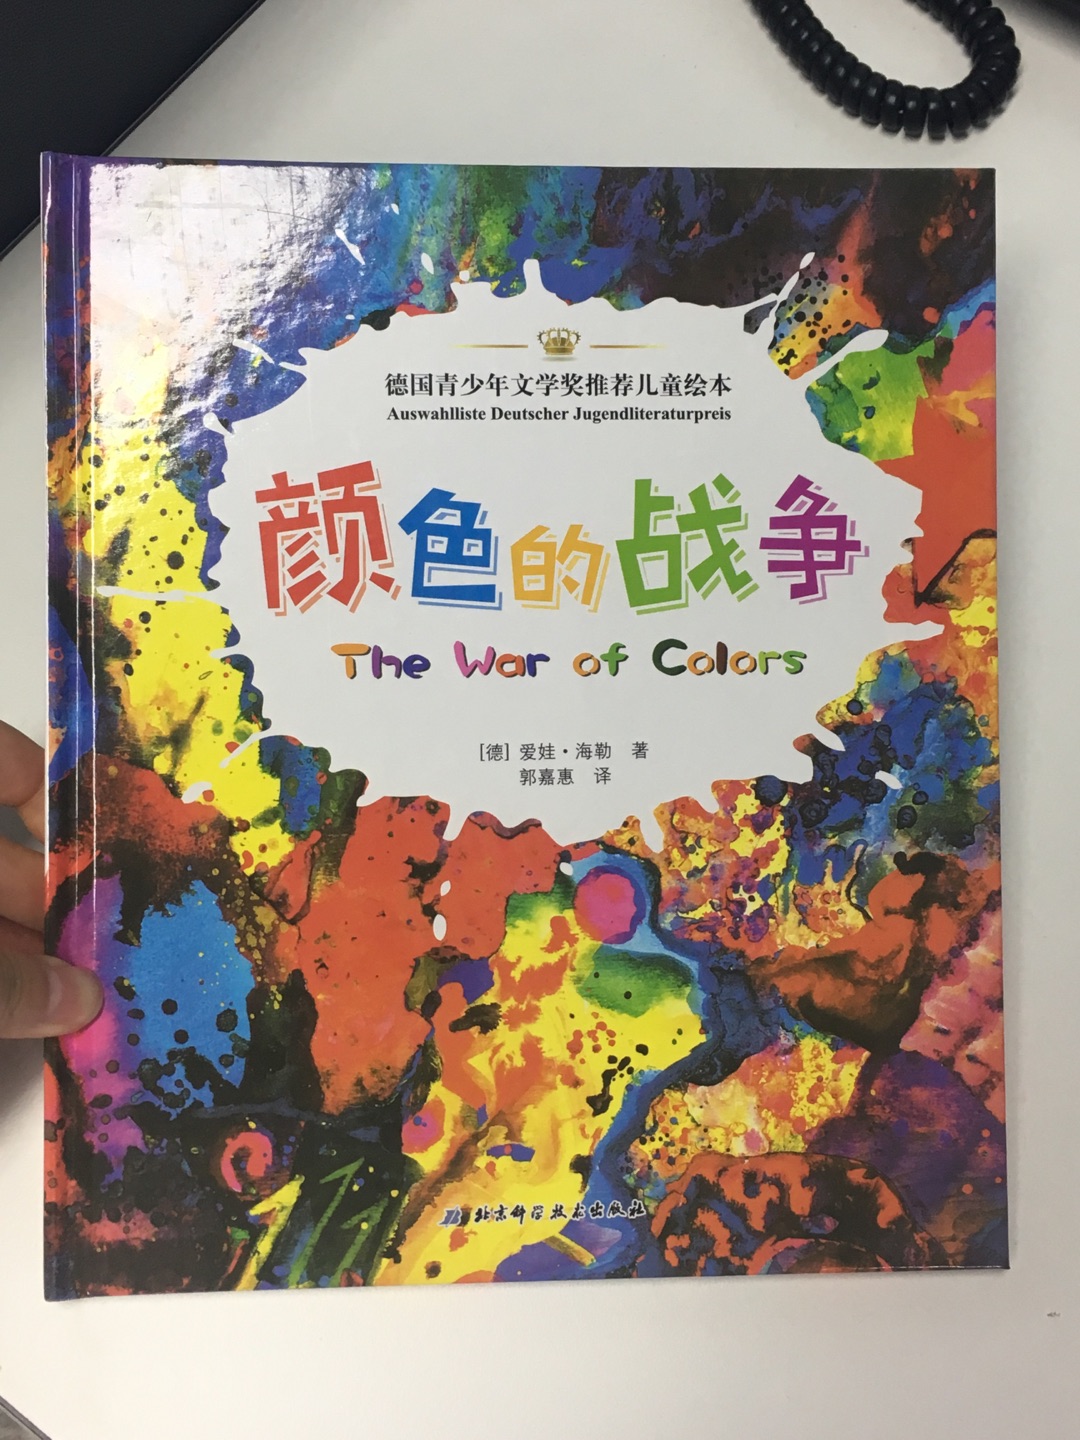 这是关于色彩认知方面我最喜欢的一本绘本，超级喜欢。将颜色带给人的心理感受借助故事形象地表达，而且还生动地展现了混色变化